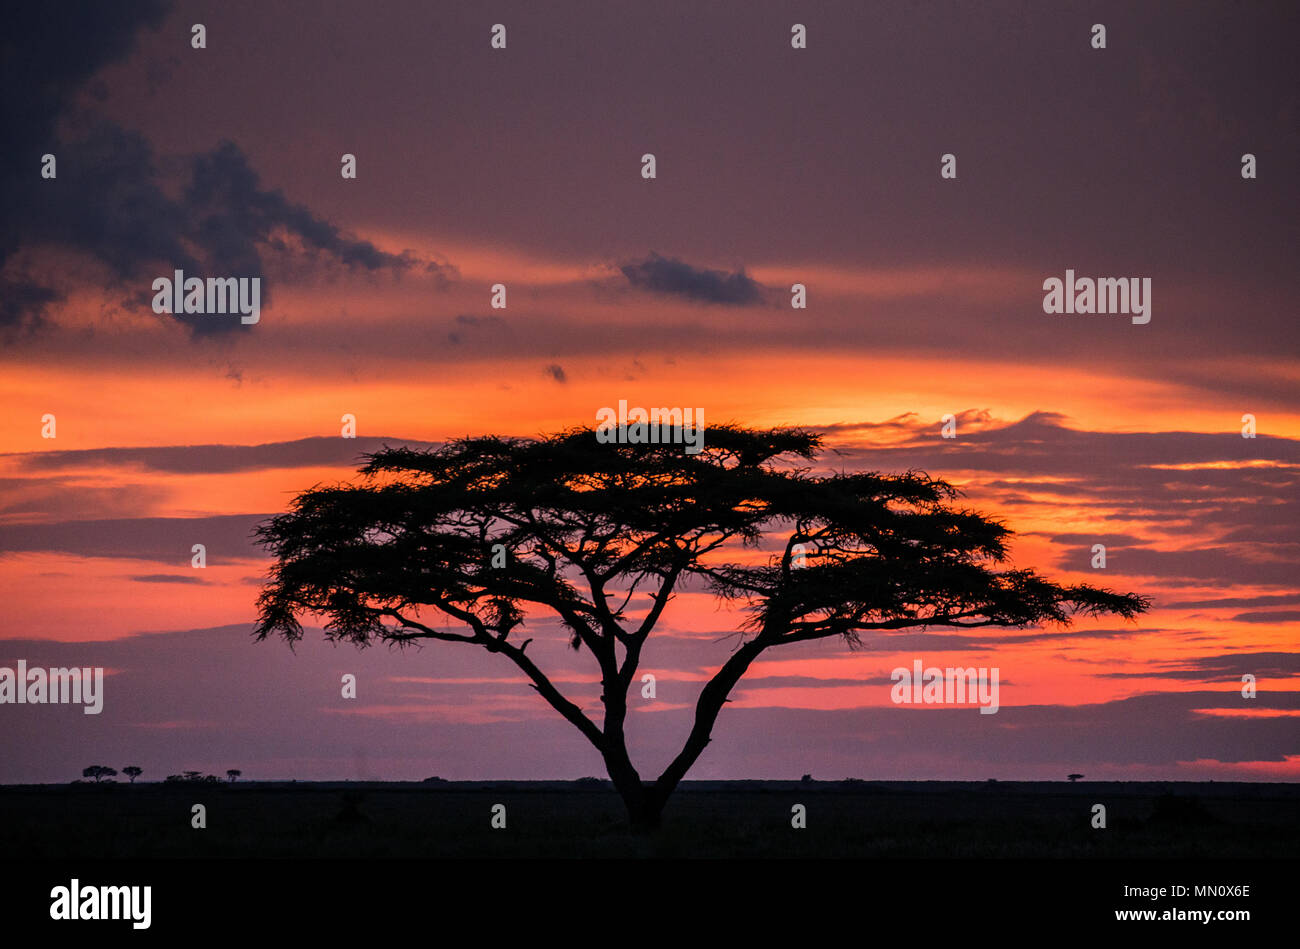 Árbol solitario en la sabana contra el telón de fondo de una impresionante puesta de sol. Classic atardecer africano. Amanecer. En el África oriental. La República Unida de Tanzanía. Parque Nacional del Serengeti. Foto de stock